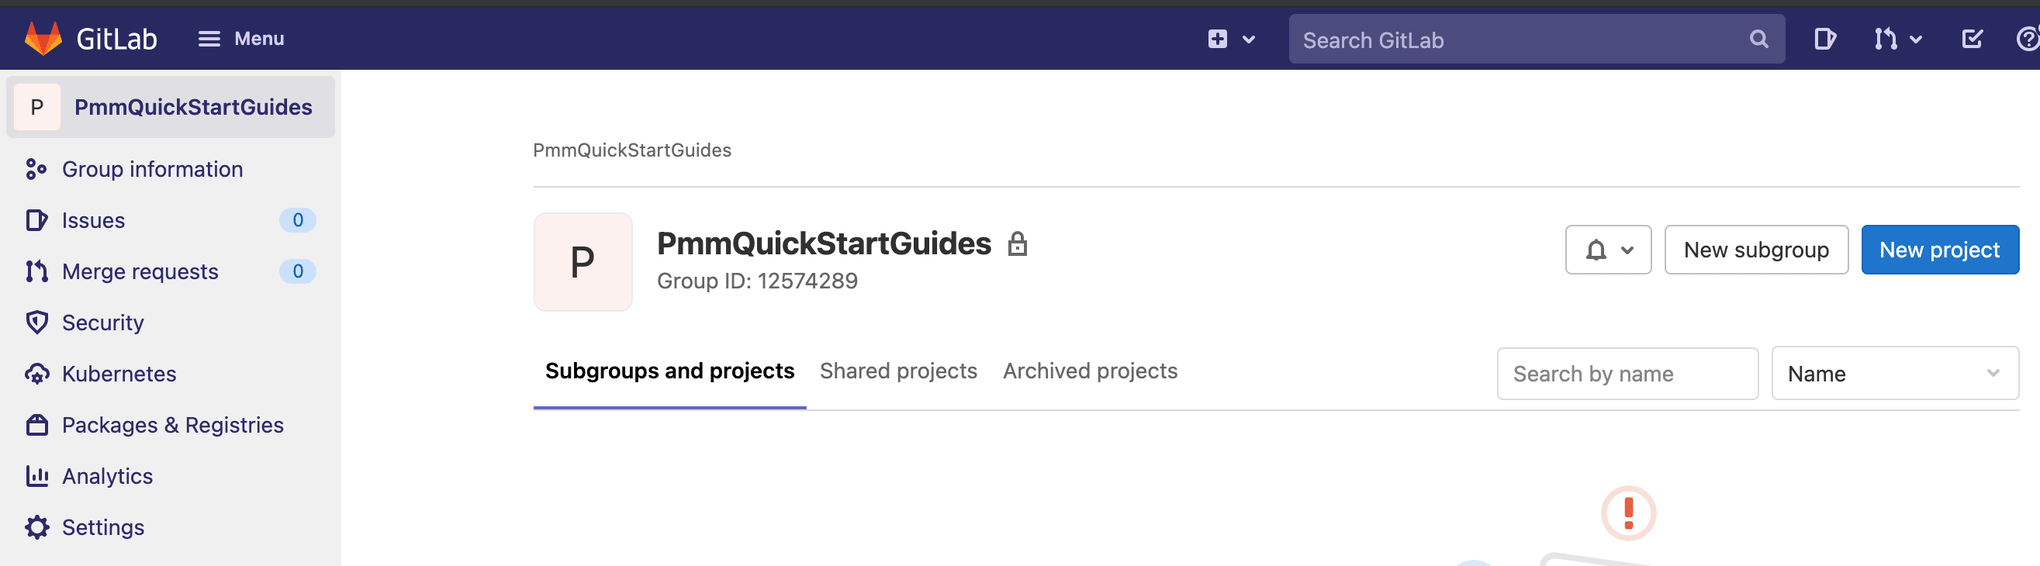 Przechodzenie do tworzenia nowego projektu w GitLab